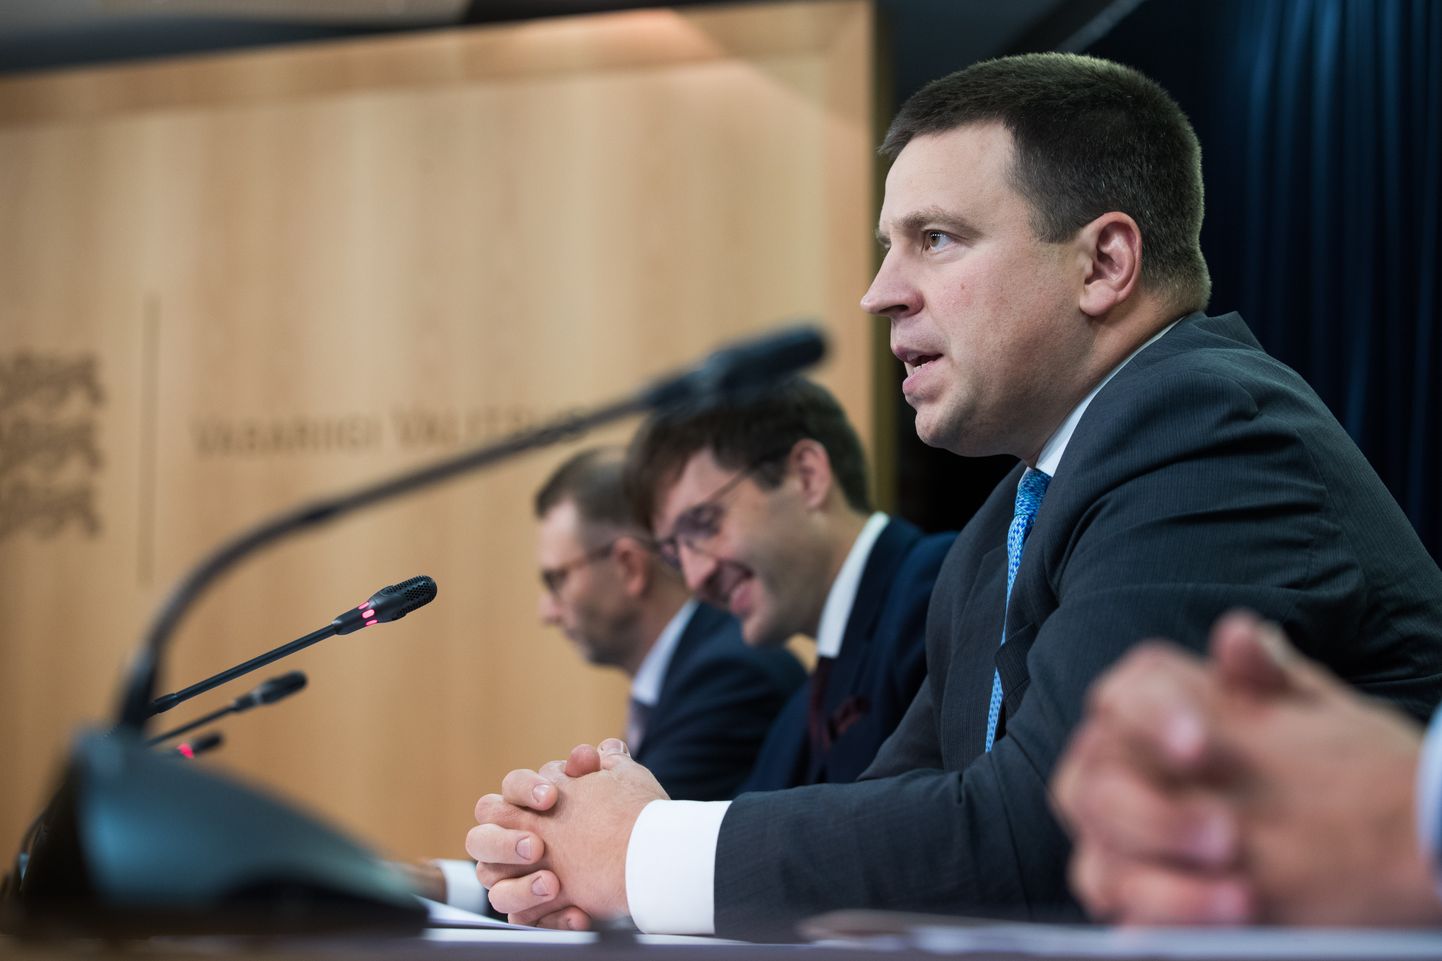 Eesti Vabariigi valitsuse pressikonverents, peaminister Jüri Ratas vastamas küsimustele.